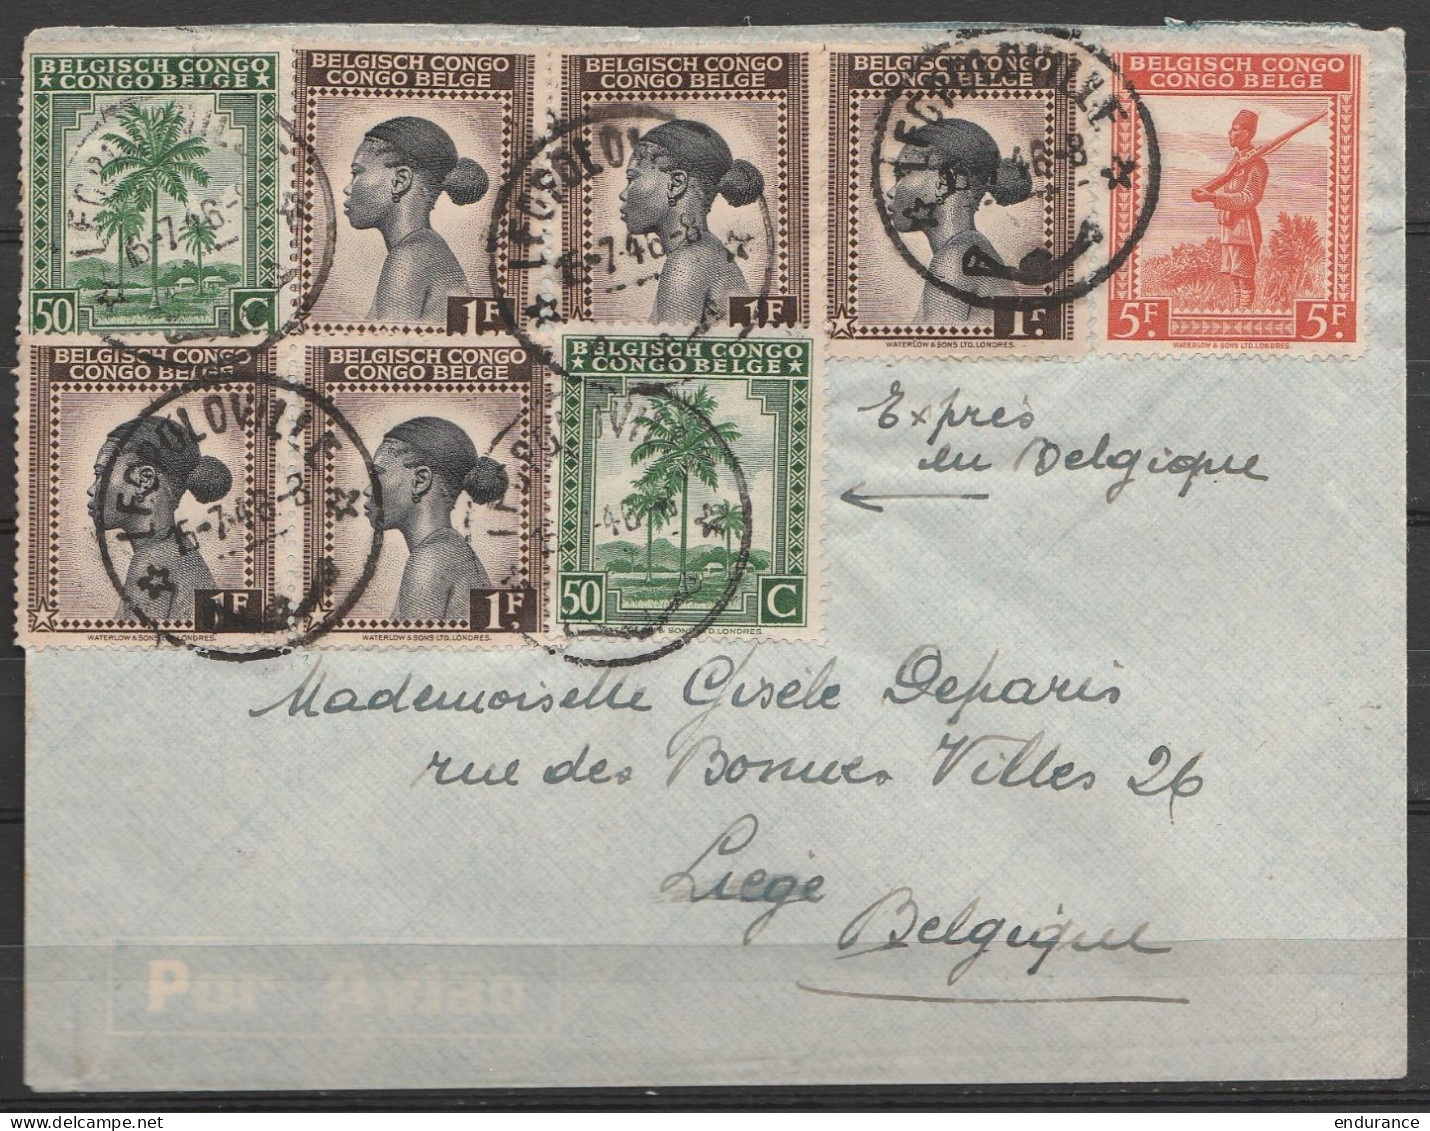 Congo Belge - L. Affr. N°234x2 + 237x5 + 243 Càd LEOPOLDVILLE /15-7-1946 Pour LIEGE - "Exprès En Belgique" - Covers & Documents